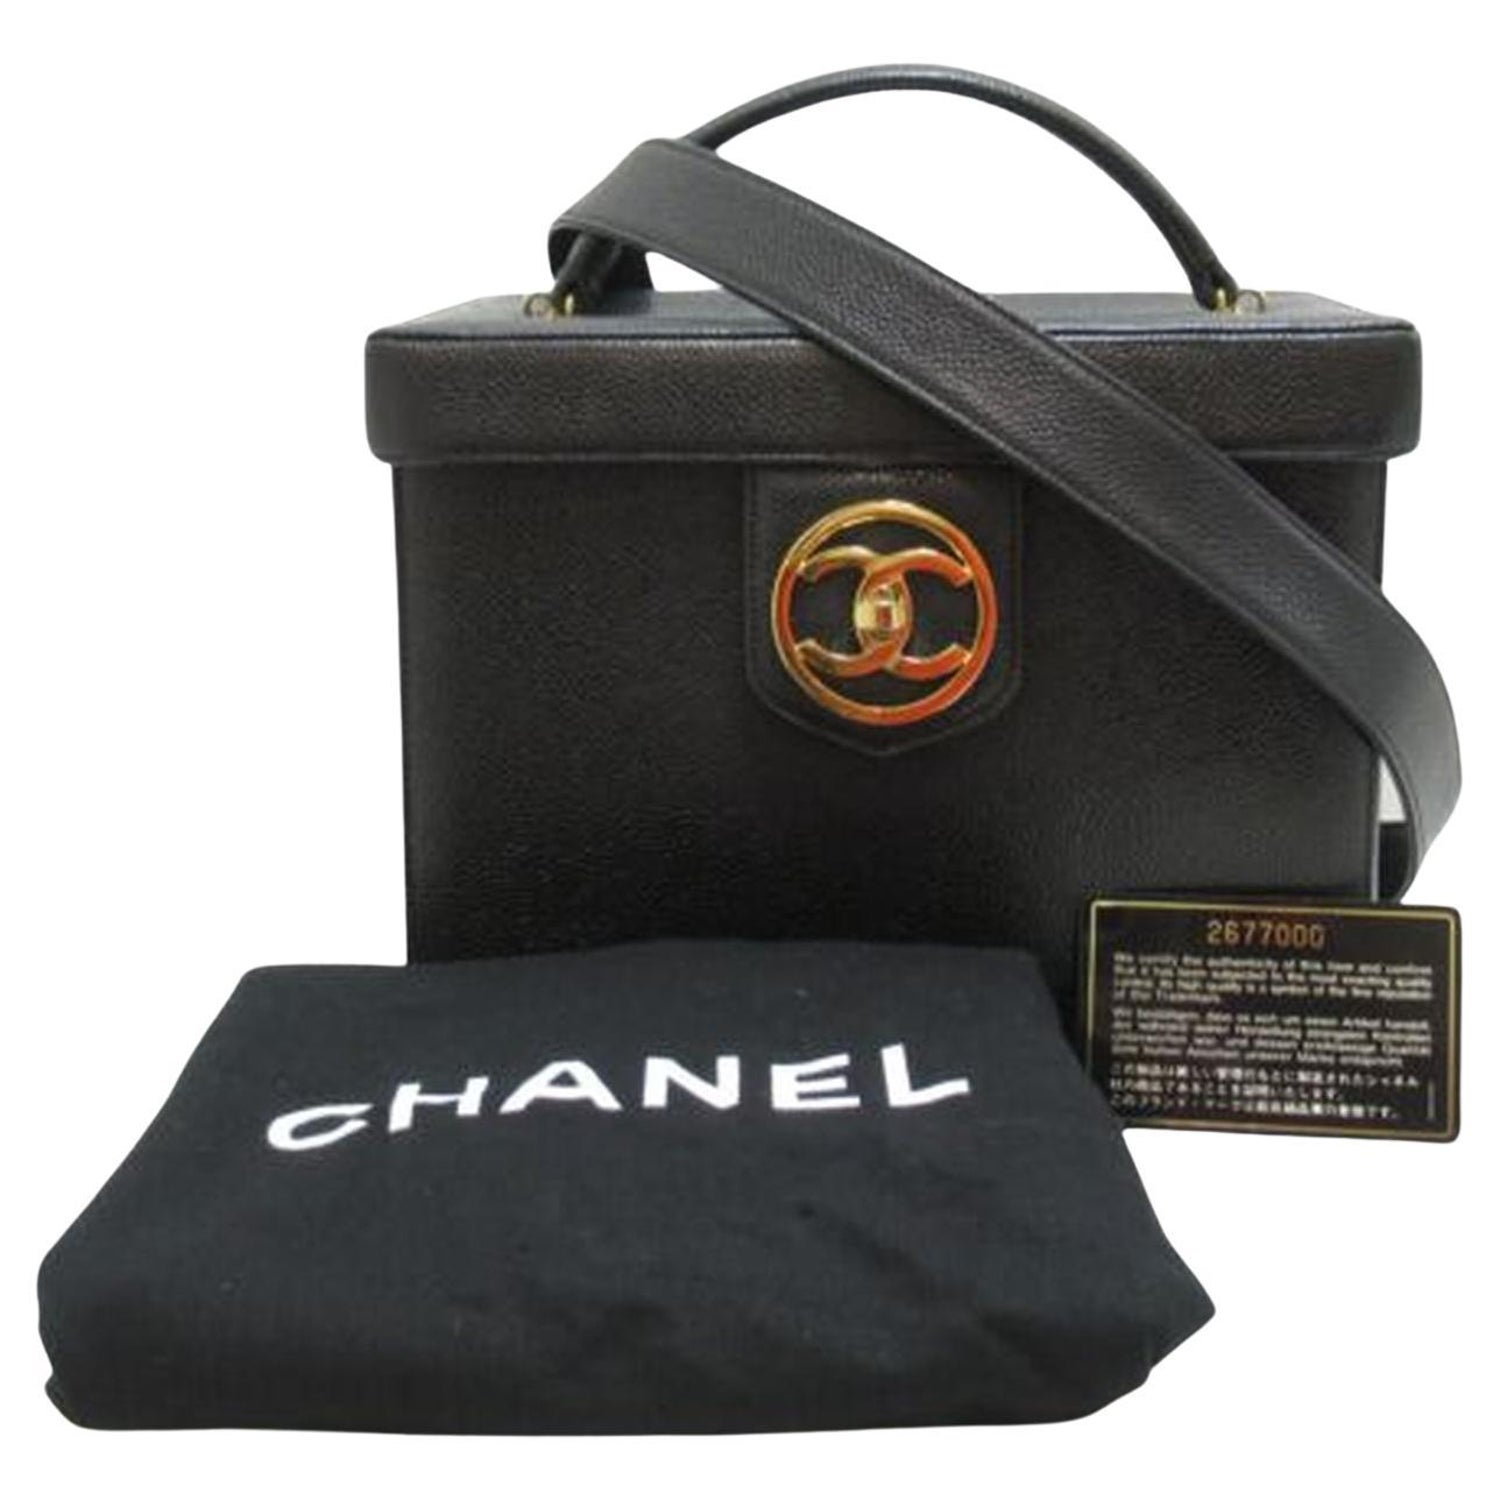 Chanel Makeup Bag - 12 For Sale on 1stDibs  makeup bag chanel, chanel make  up bag, chanel makeup bag uk